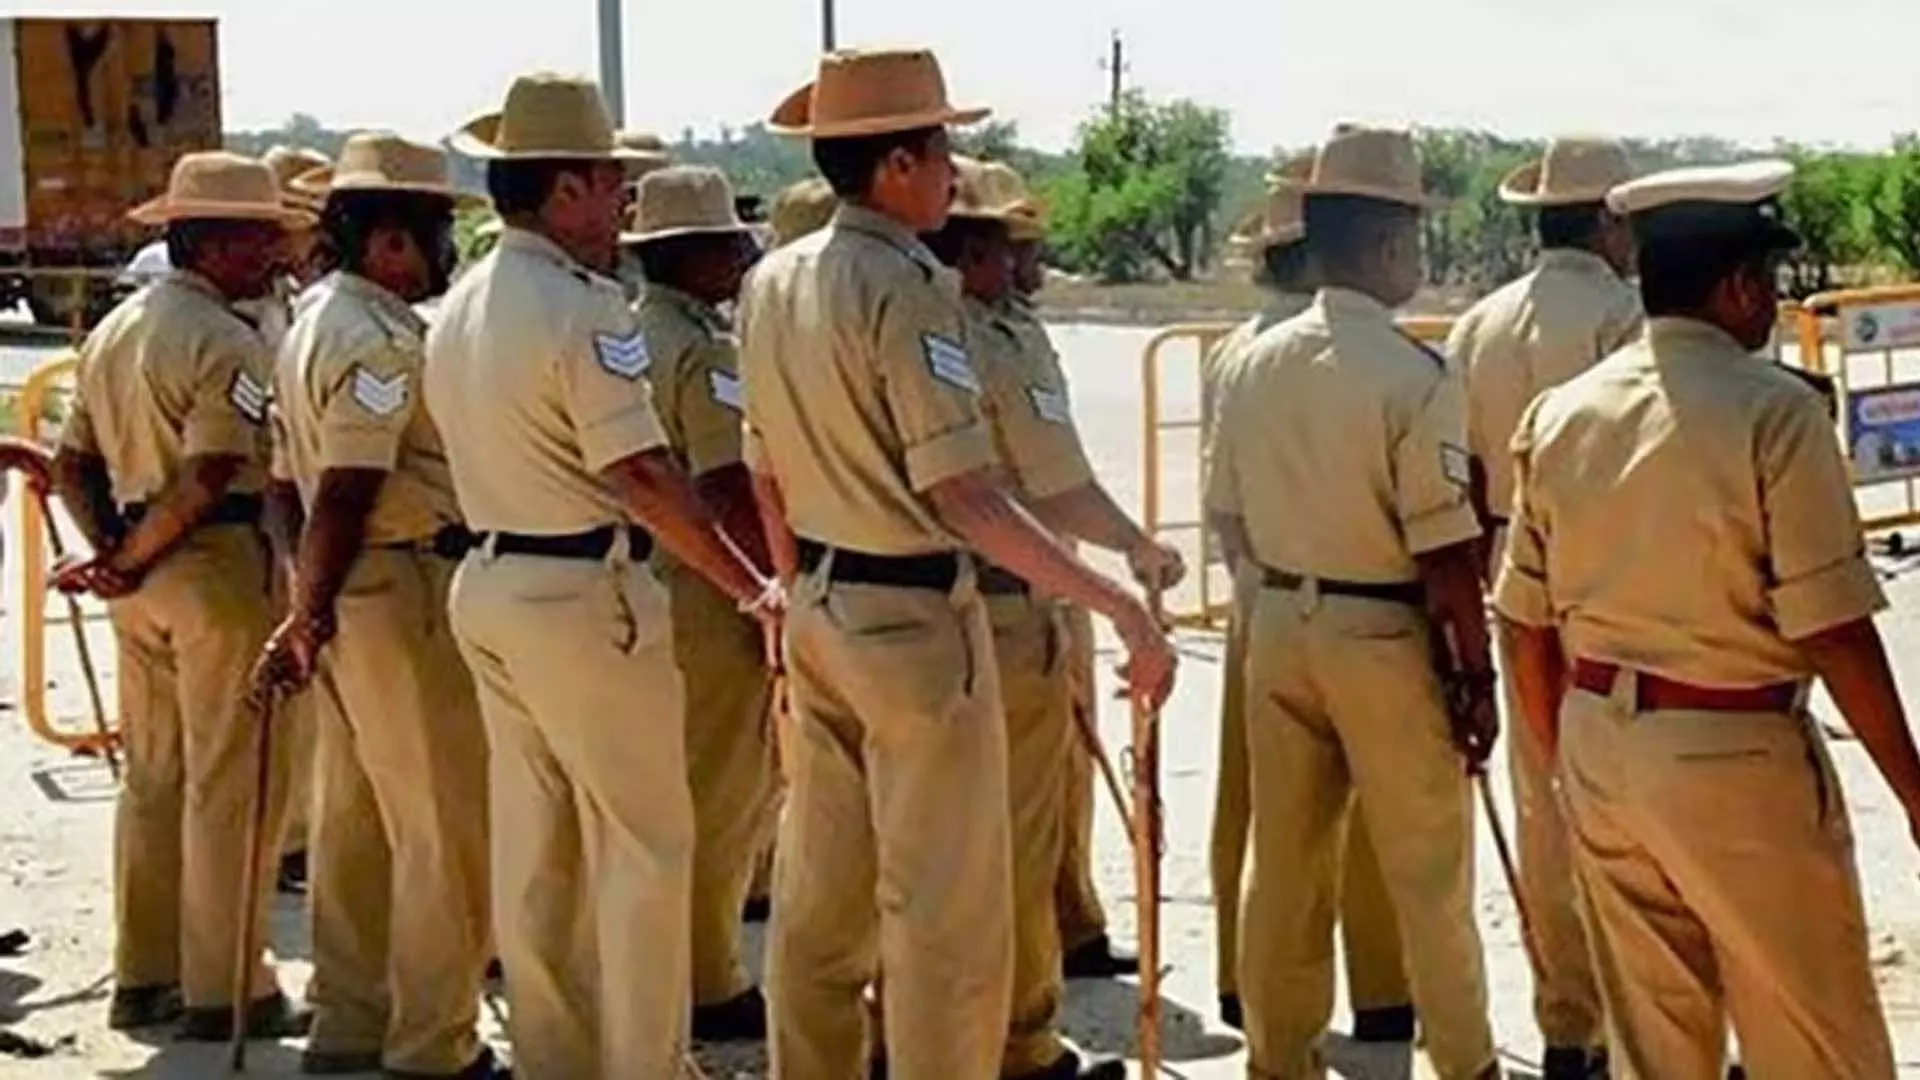 चन्नागिरी पुलिस स्टेशन में भीड़ के हमले के सिलसिले में 25 लोगों को गिरफ्तार किया गया